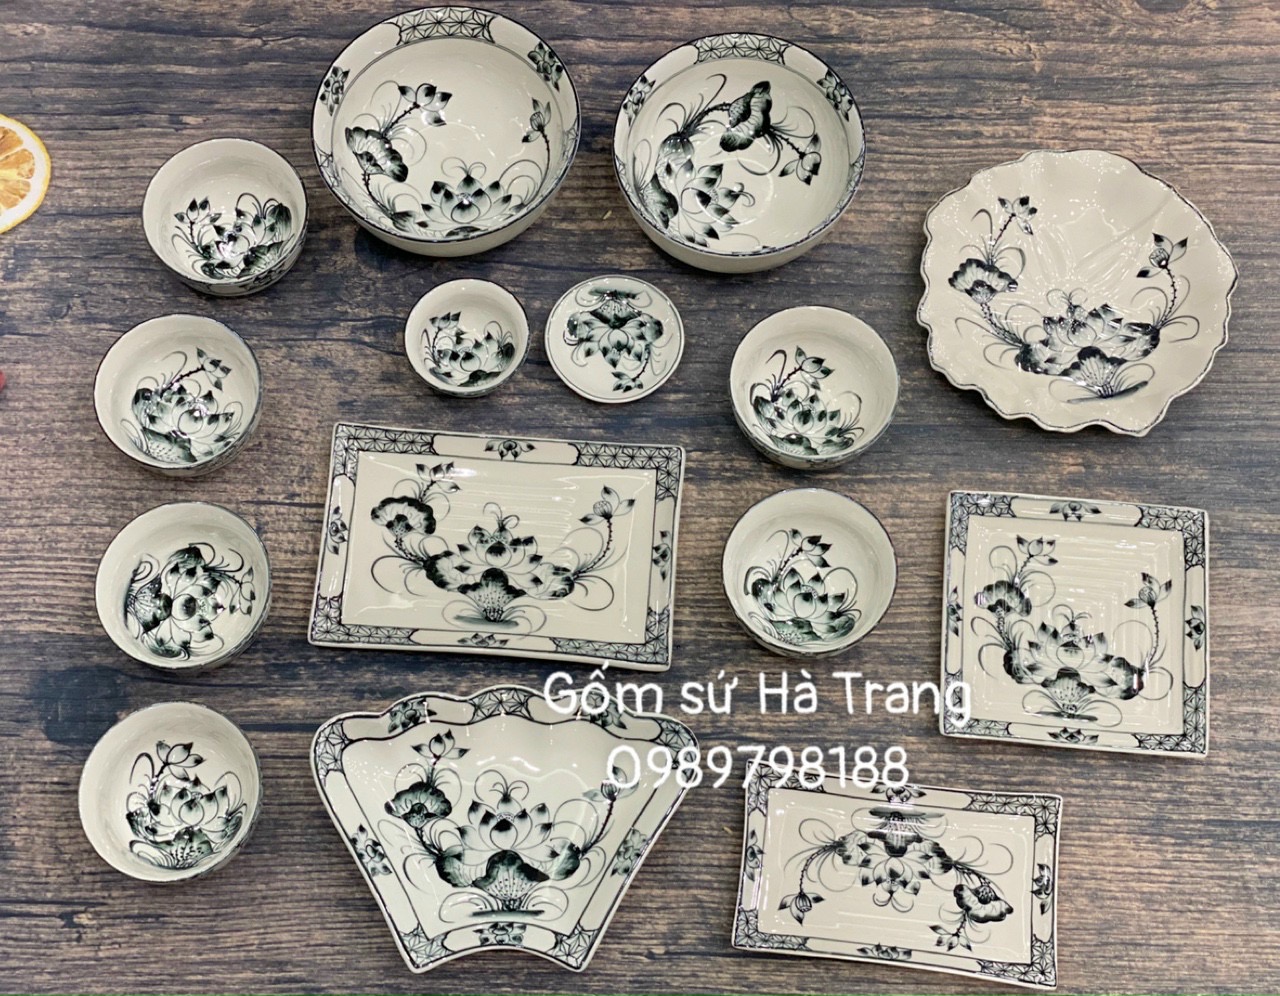 Bộ bát đĩa gốm sứ Bát Tràng cao cấp không chì vẽ hoạ tiết sen đen chàm xuất dư 15 món